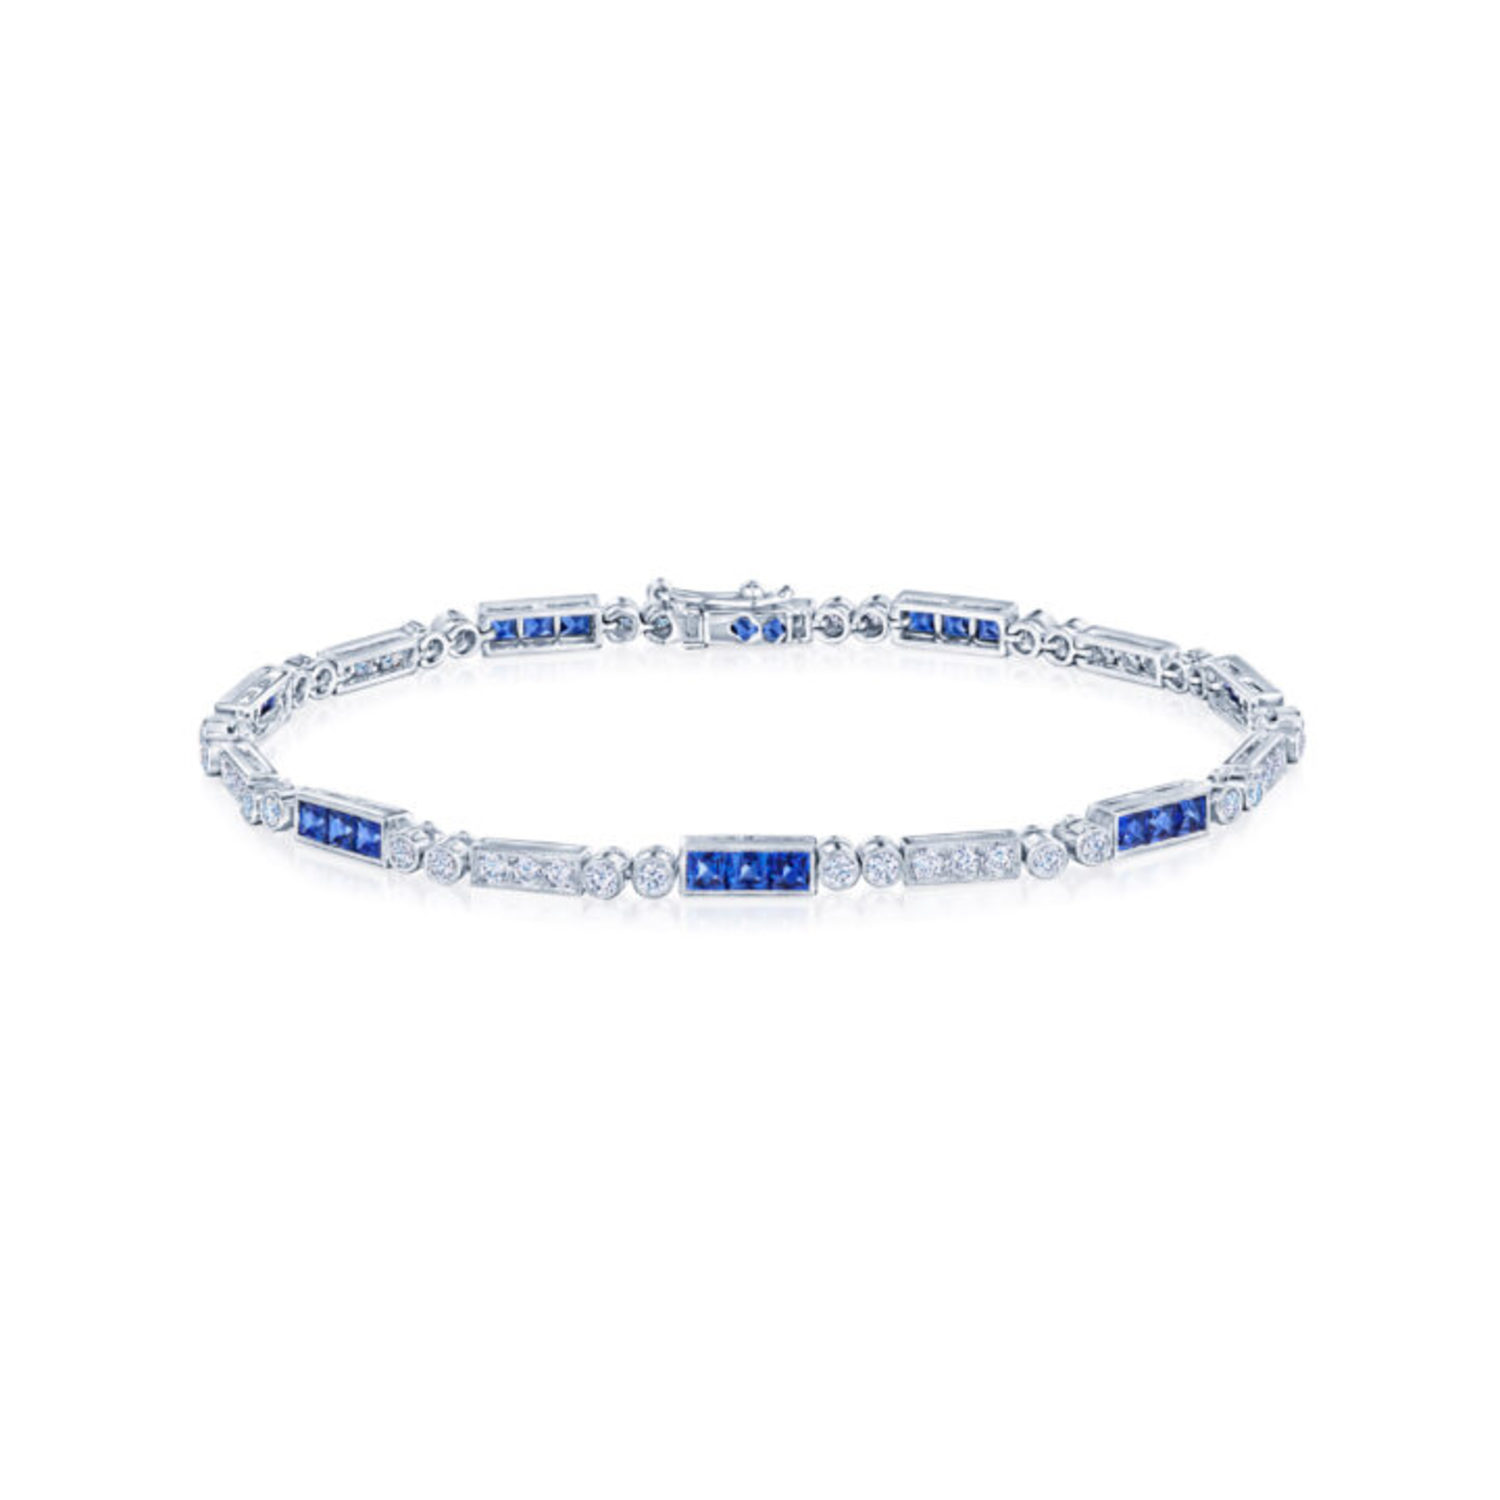 Diamond and Sapphire Splendor Line Bracelet in 18K White Gold